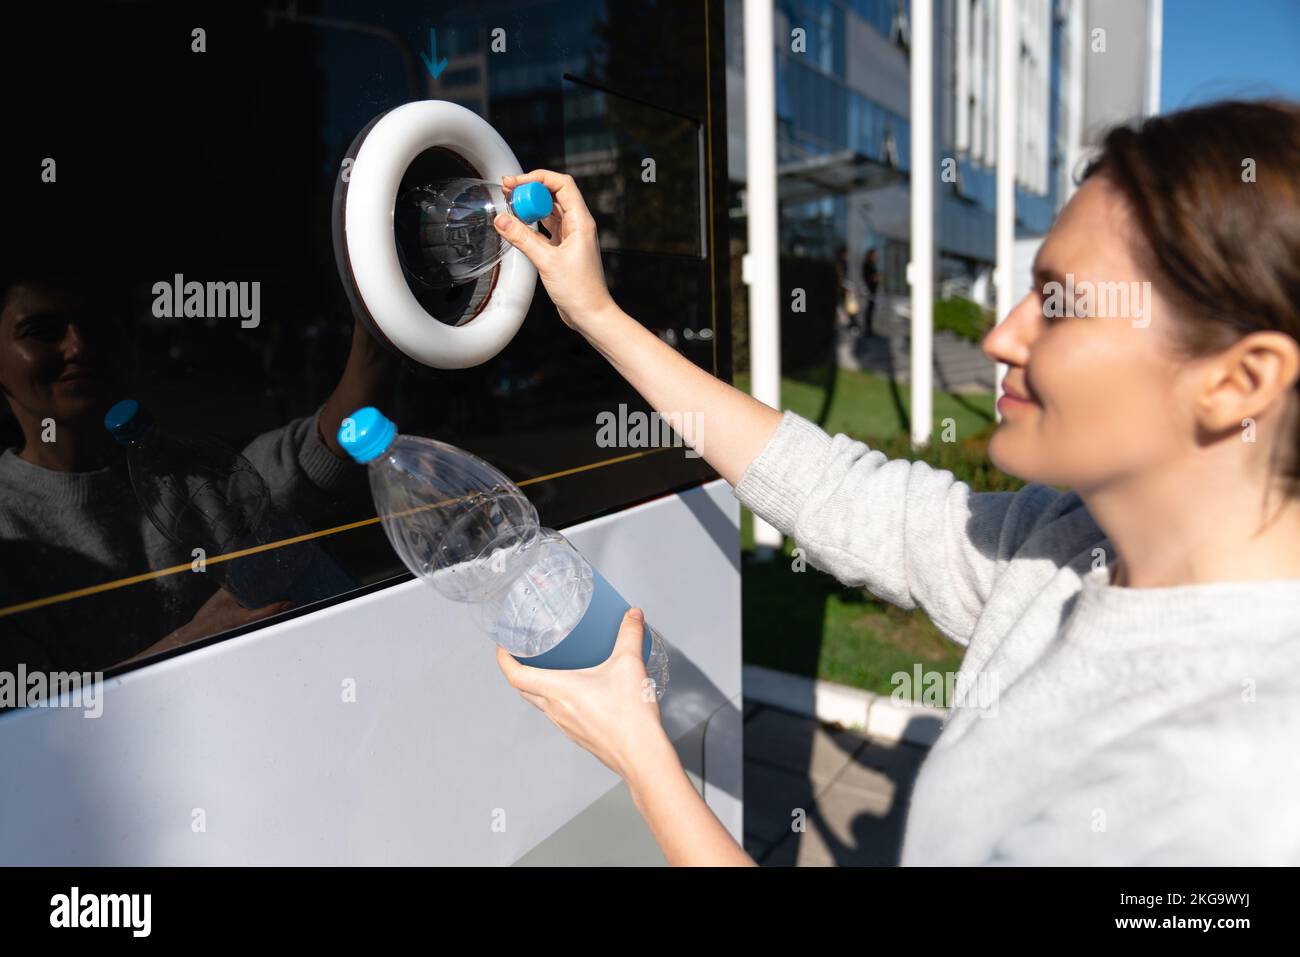 Una mujer utiliza una máquina de autoservicio para recibir botellas y latas de plástico usadas en la calle de una ciudad Foto de stock